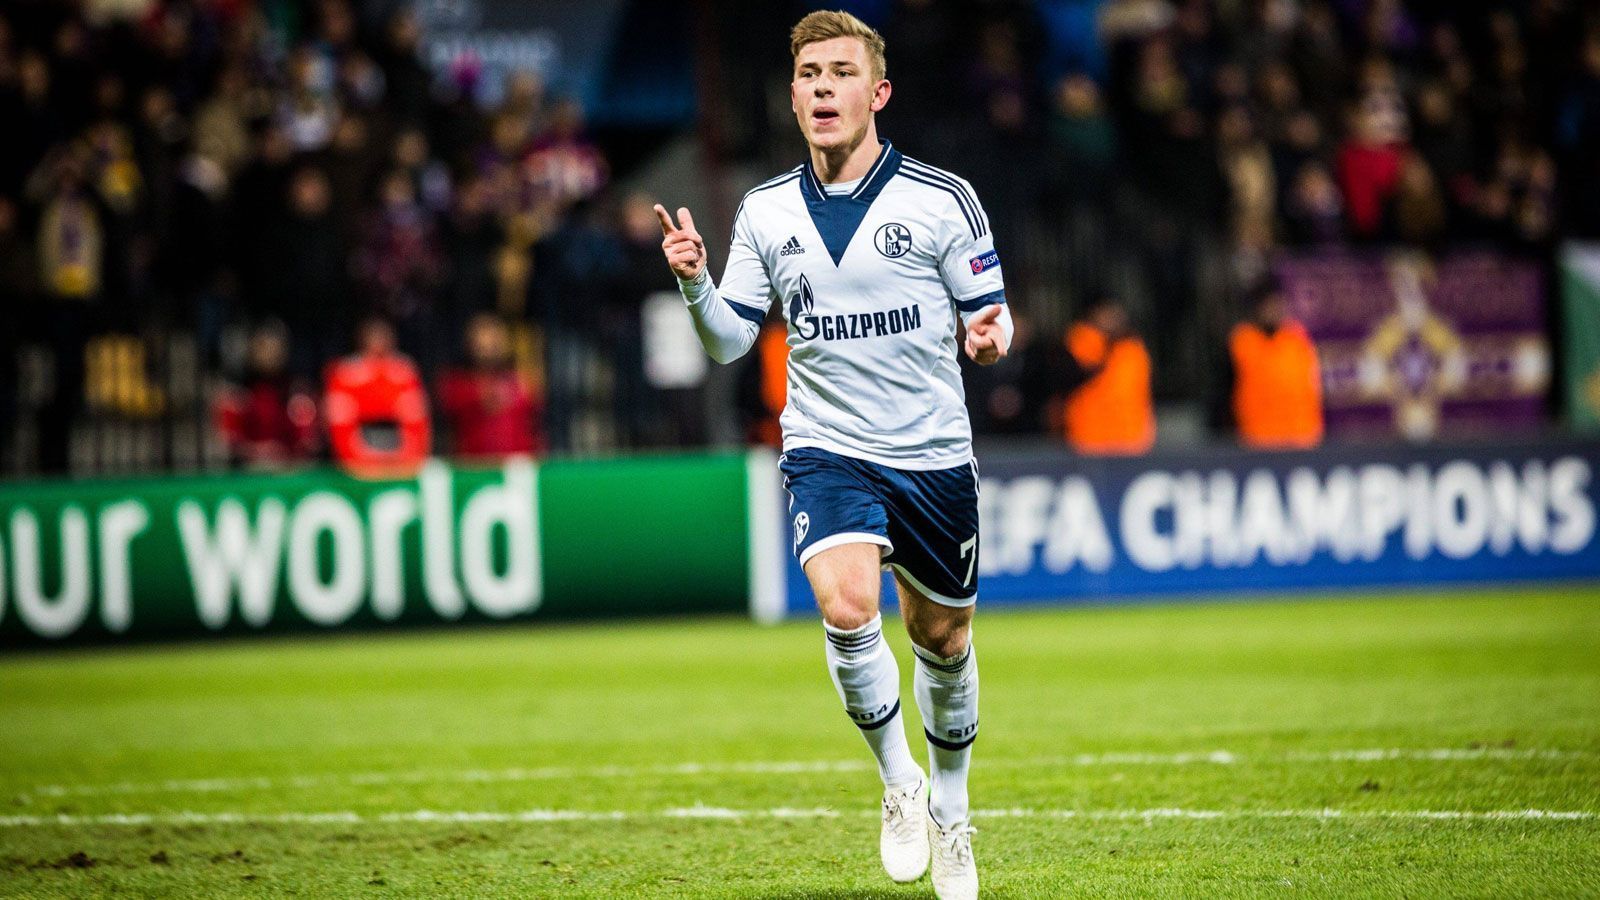 
                <strong>Platz 6: Max Meyer</strong><br>
                Alter: 19 Jahre, zwei Monate und 22 TageDamaliger Verein: FC Schalke 04Gegner und Endergebnis: 1:0 gegen NK Maribor (14/15)
              